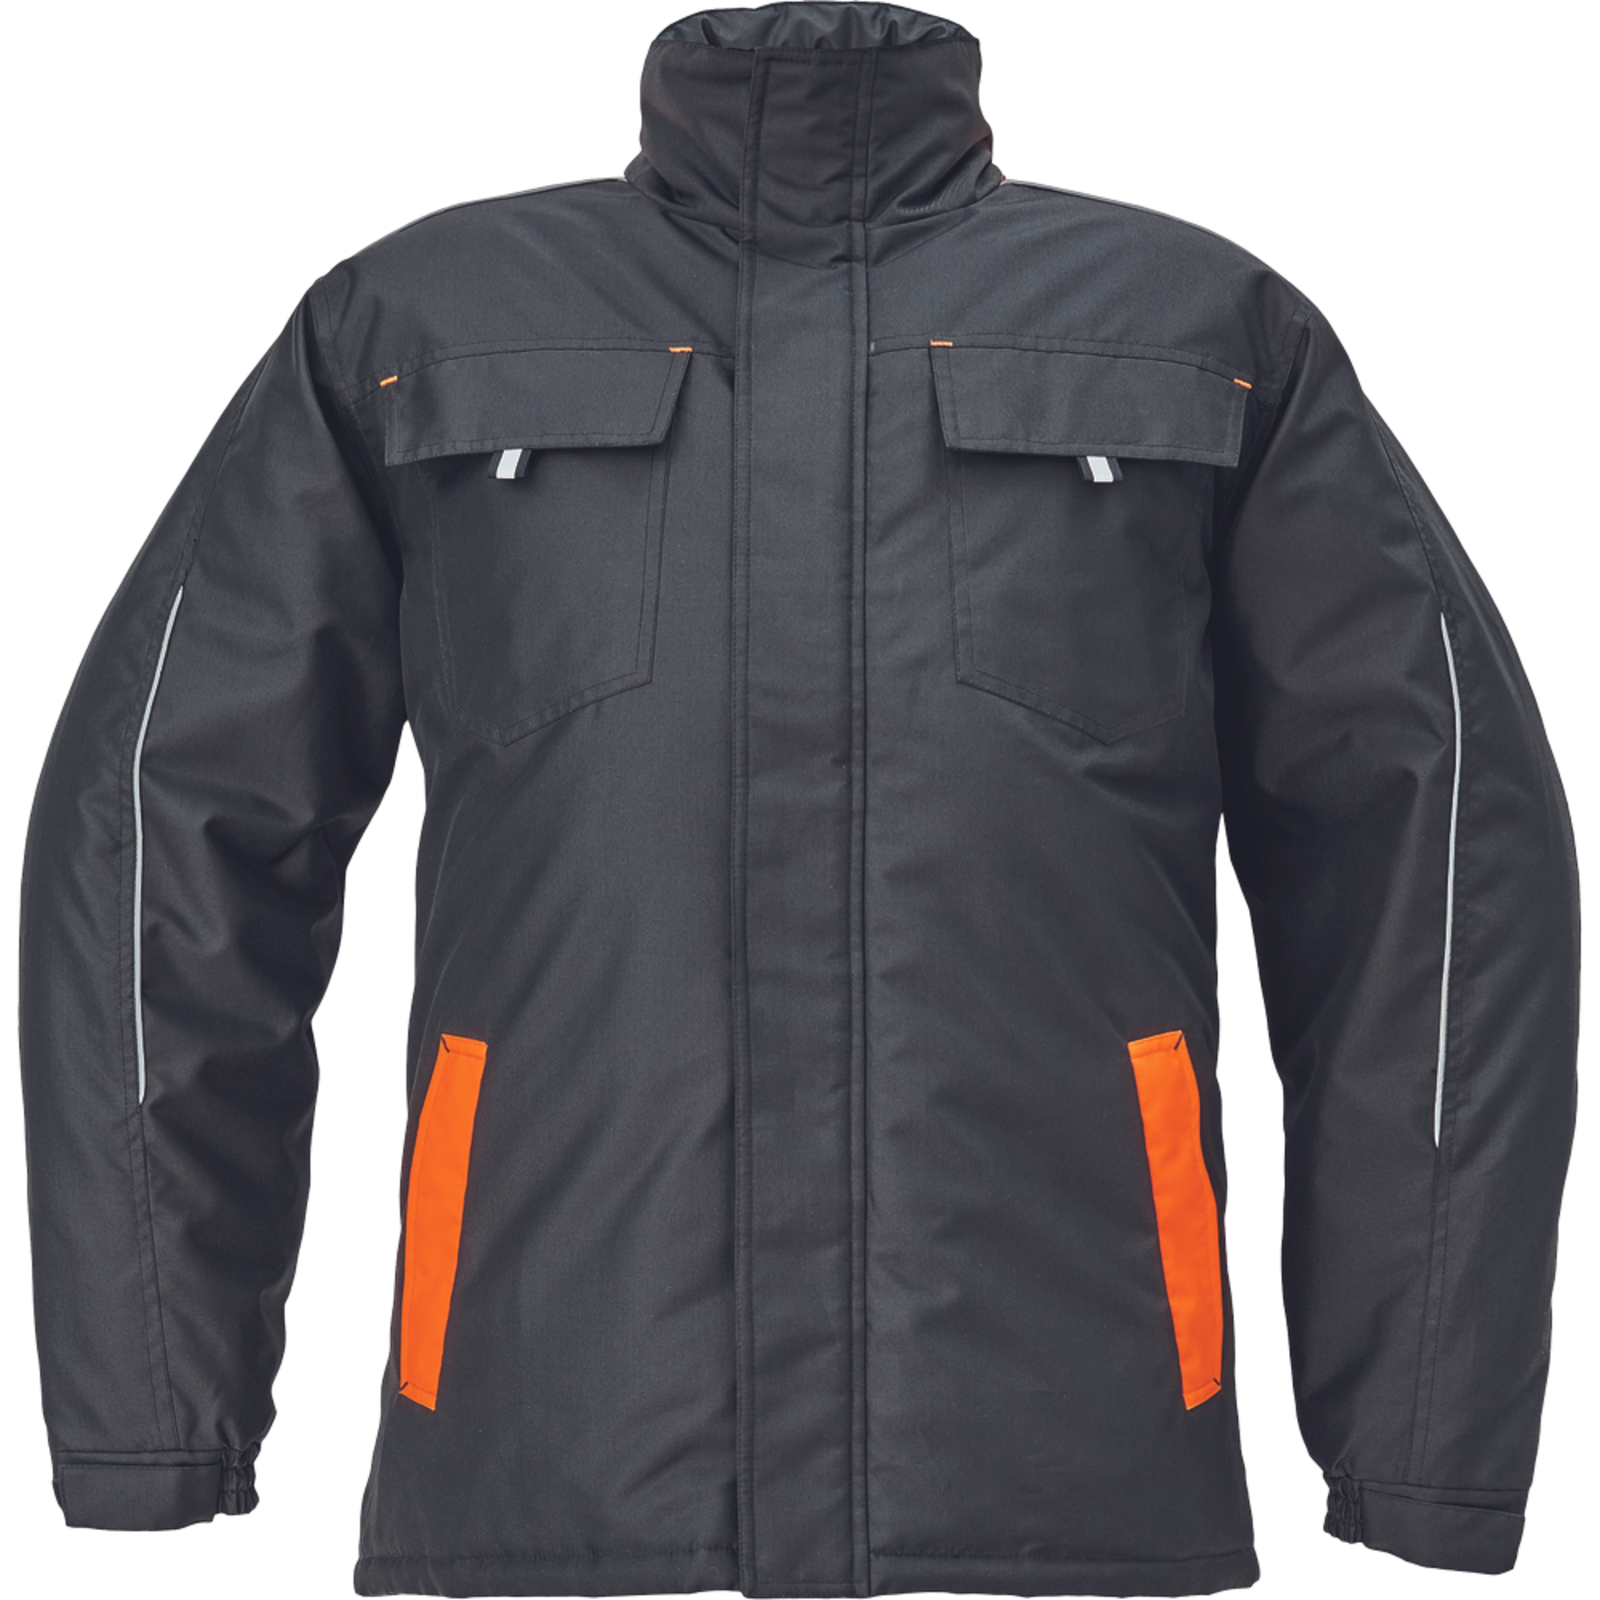 Zimná bunda Cerva Max Vivo pánska - veľkosť: 4XL, farba: čierna/oranžová